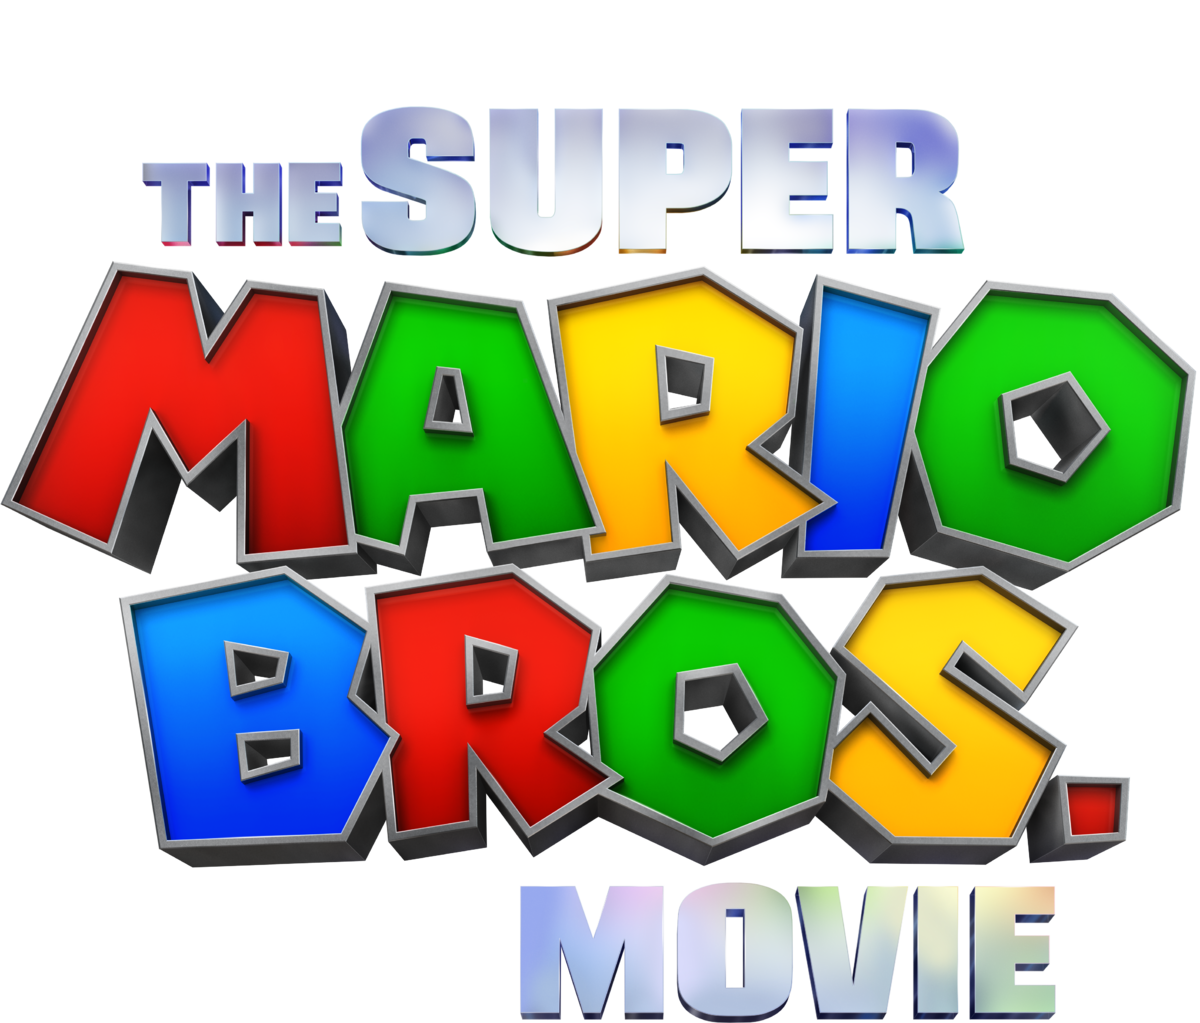 Novos Posters de Super Mario Bros. O Filme